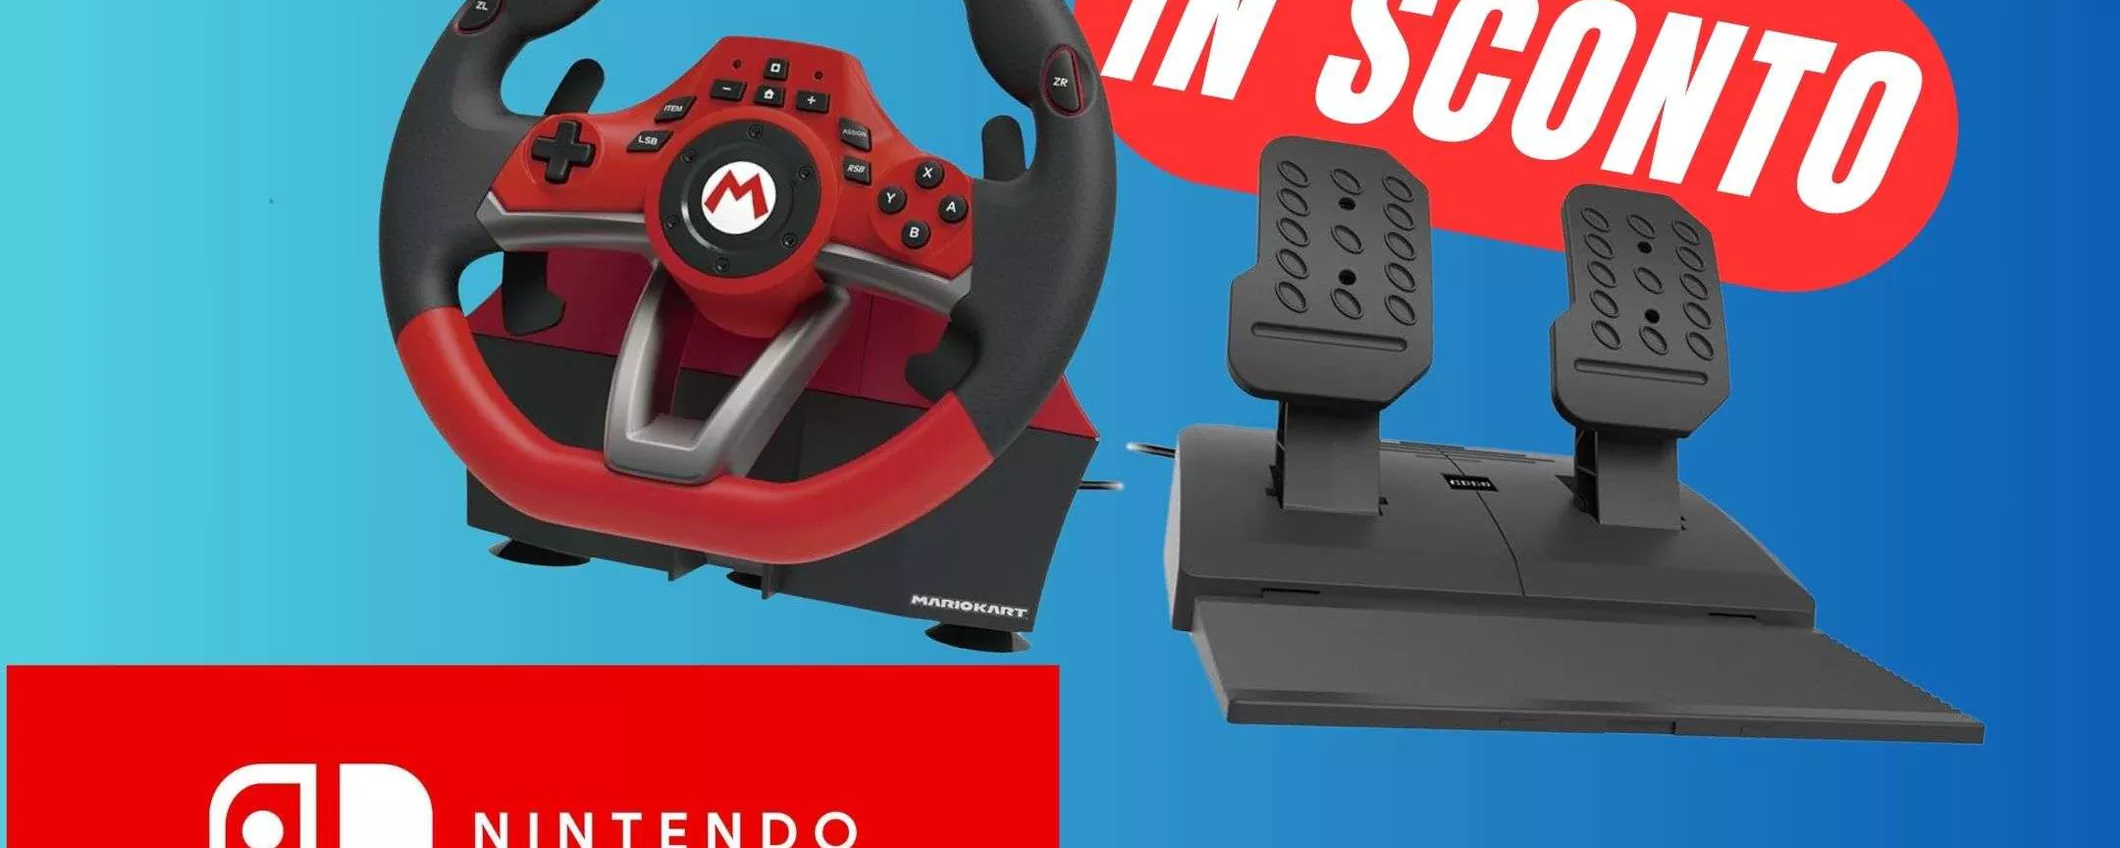 Il Volante di Mario Kart è in SCONTO su Amazon!